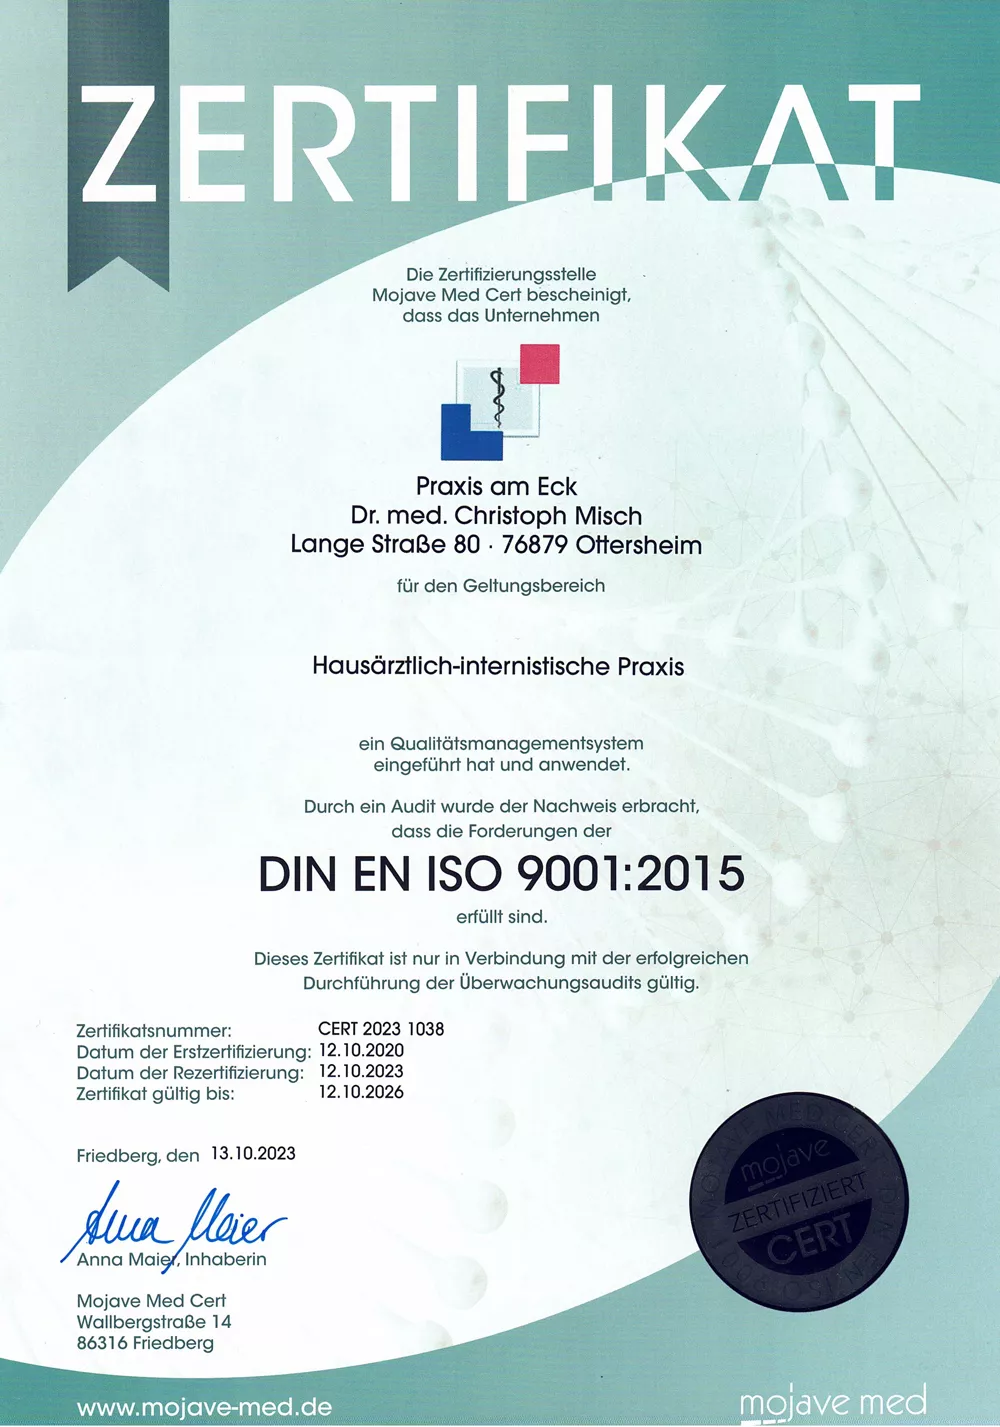 ZERTIFIZIERUNG NACH ISO 9001